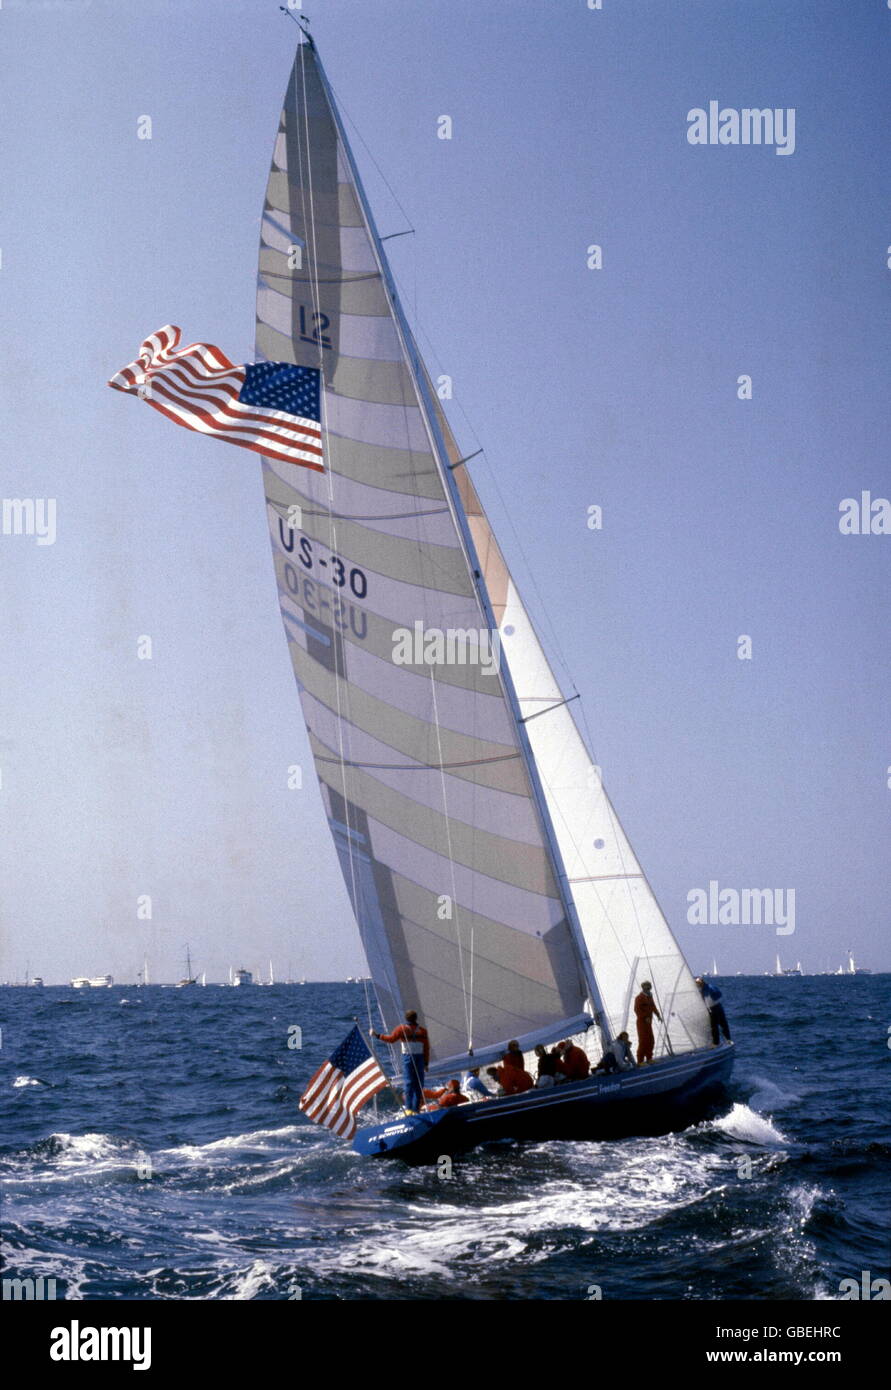 AJAXNETPHOTO.1983.Newport, Rhode Island, USA. - AMERICA'S CUP - LA LIBERTÉ, 1980 Gagnant, NAVIGATION AU LARGE DE NEWPORT, R.I. PHOTO:ADRIAN MORGAN/AJAX. REF:837415 Banque D'Images